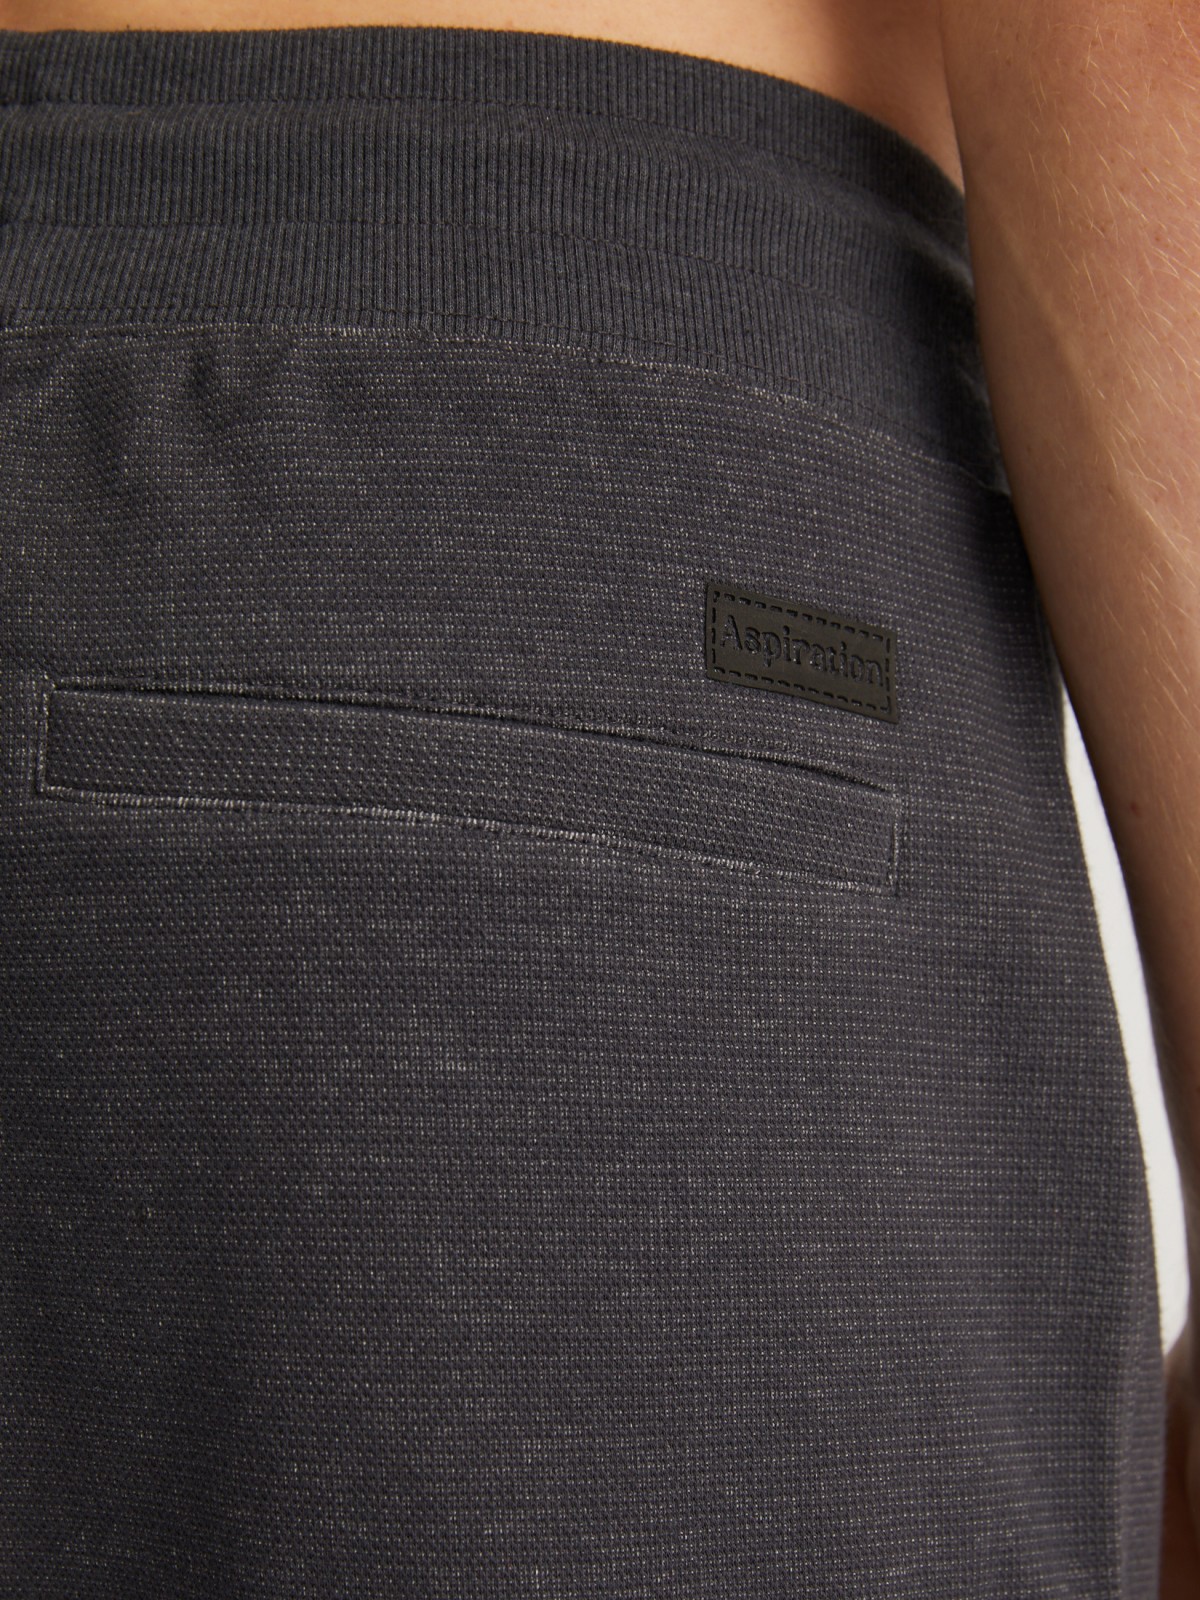 Трикотажные брюки-джоггеры в спортивном стиле zolla 014127679013, цвет темно-серый, размер S - фото 6